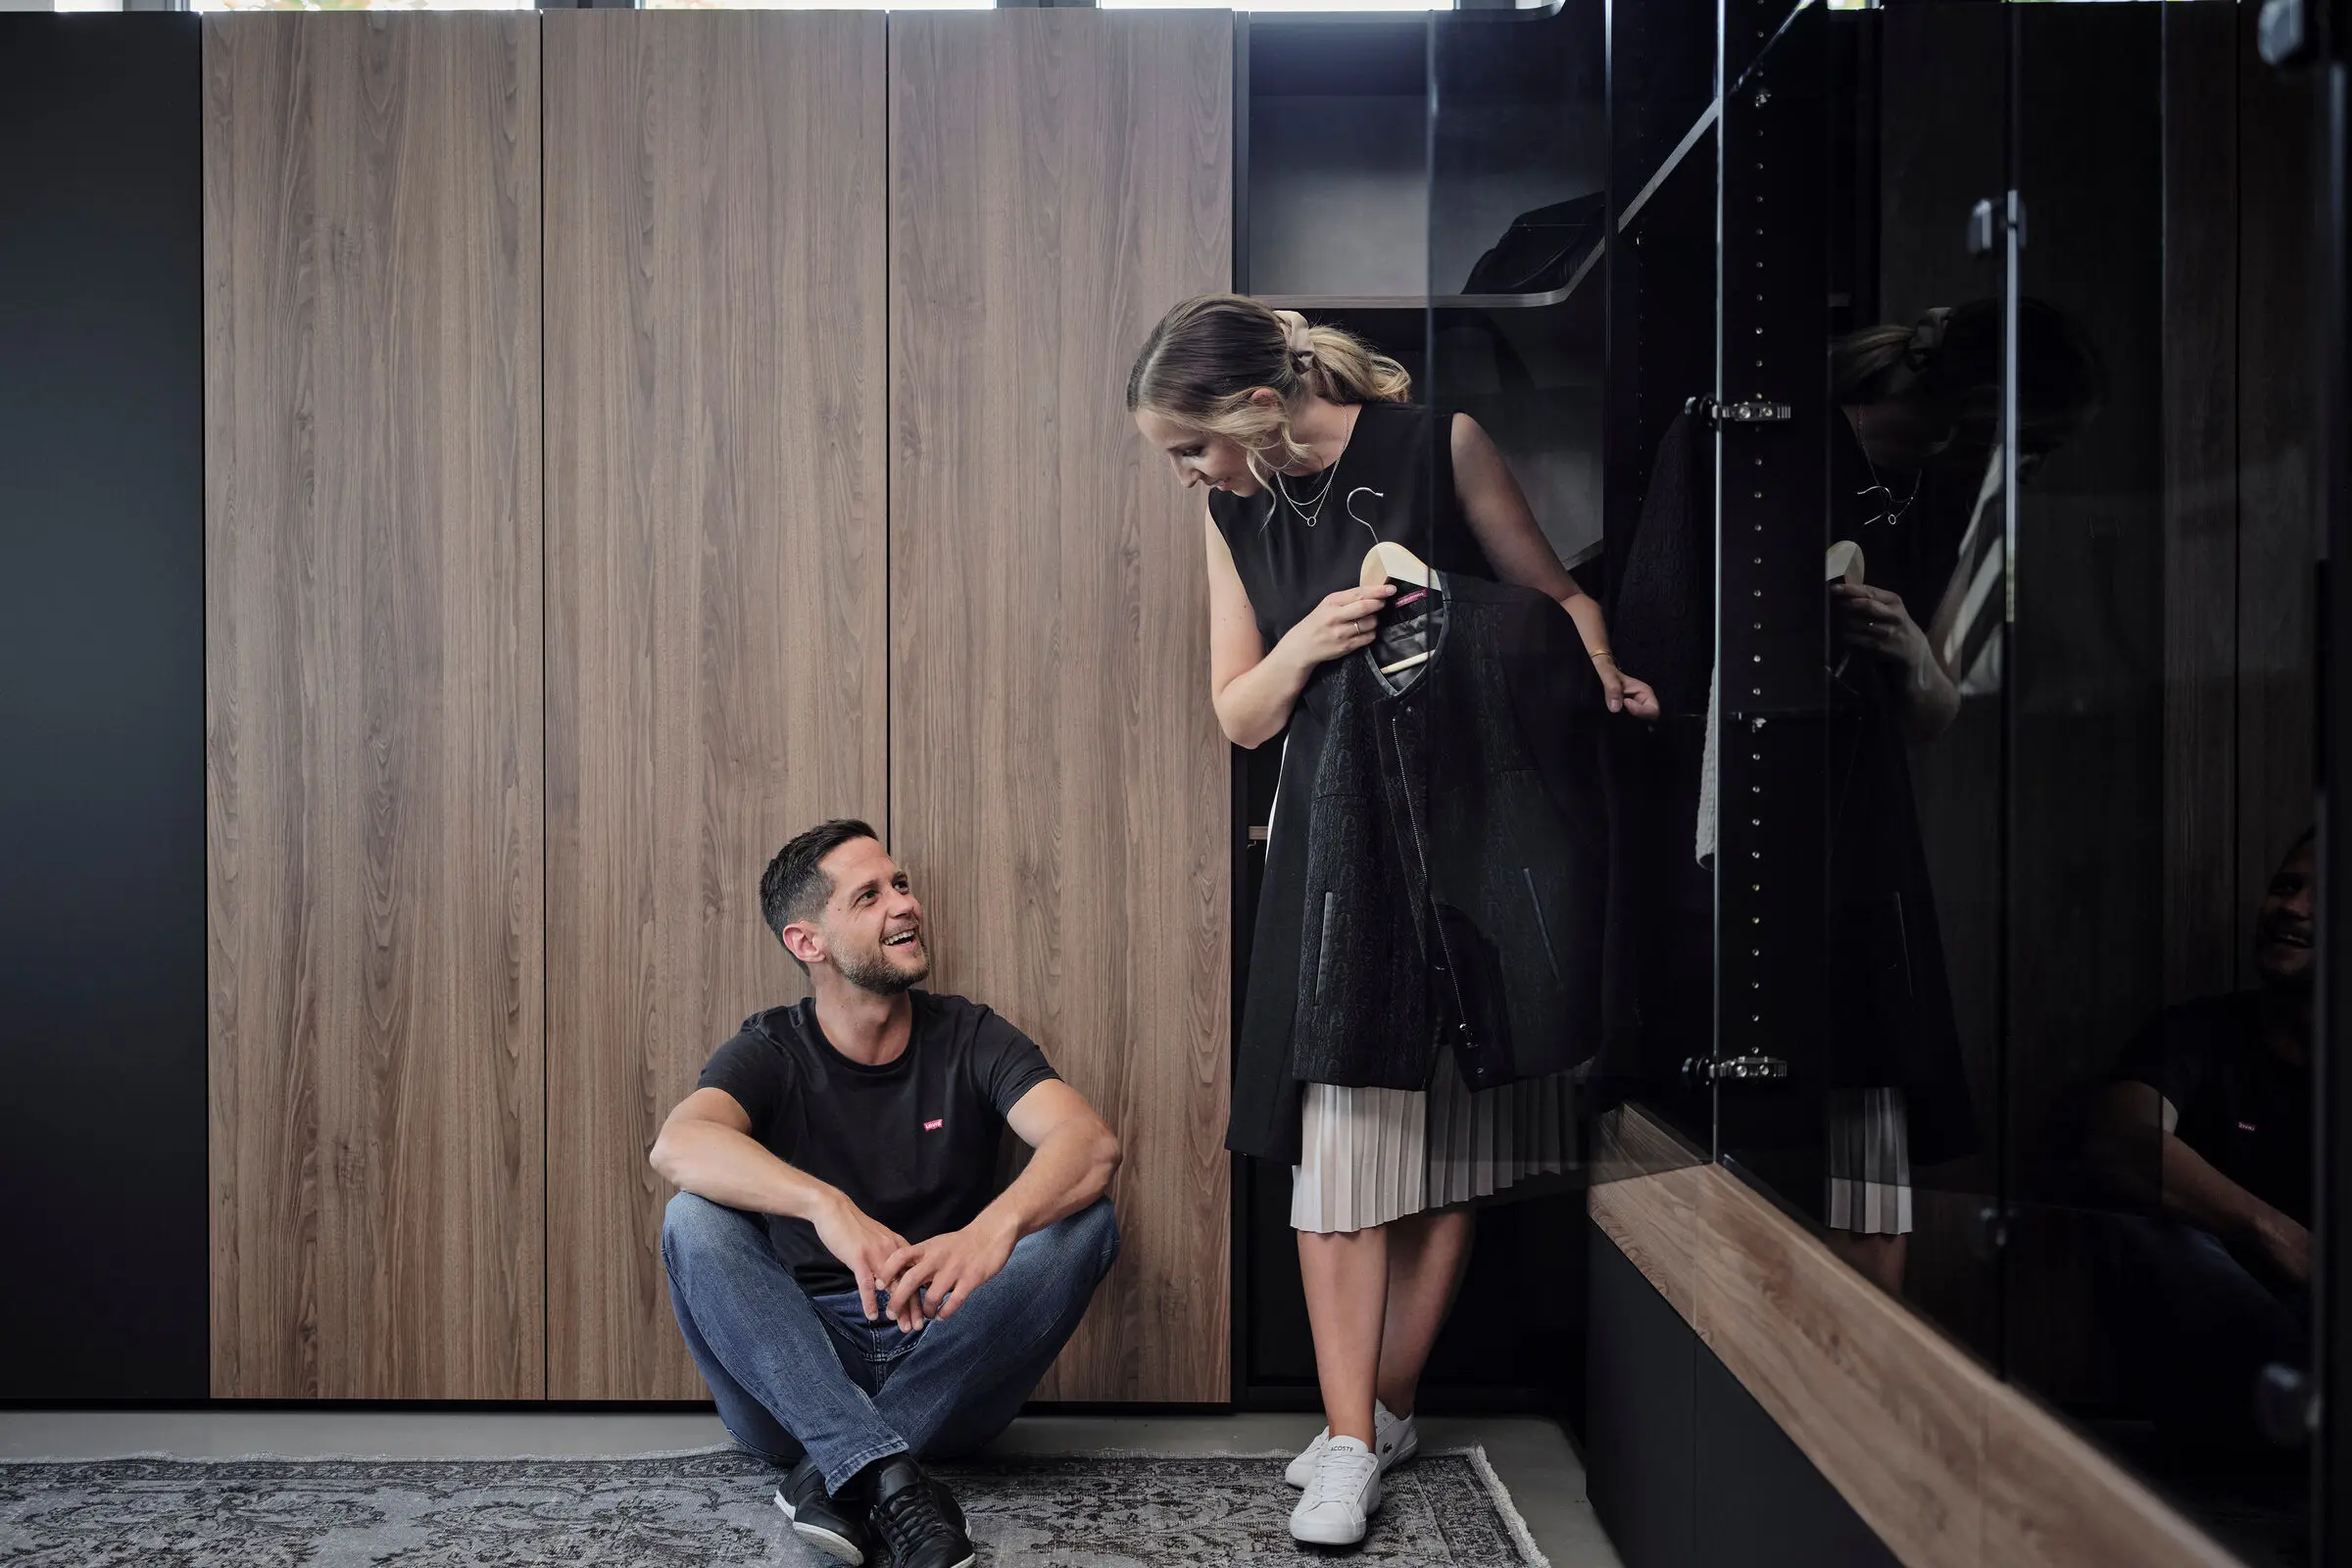 Mann und Frau vor Schrank in Schwarz mit Fronten aus Holz.